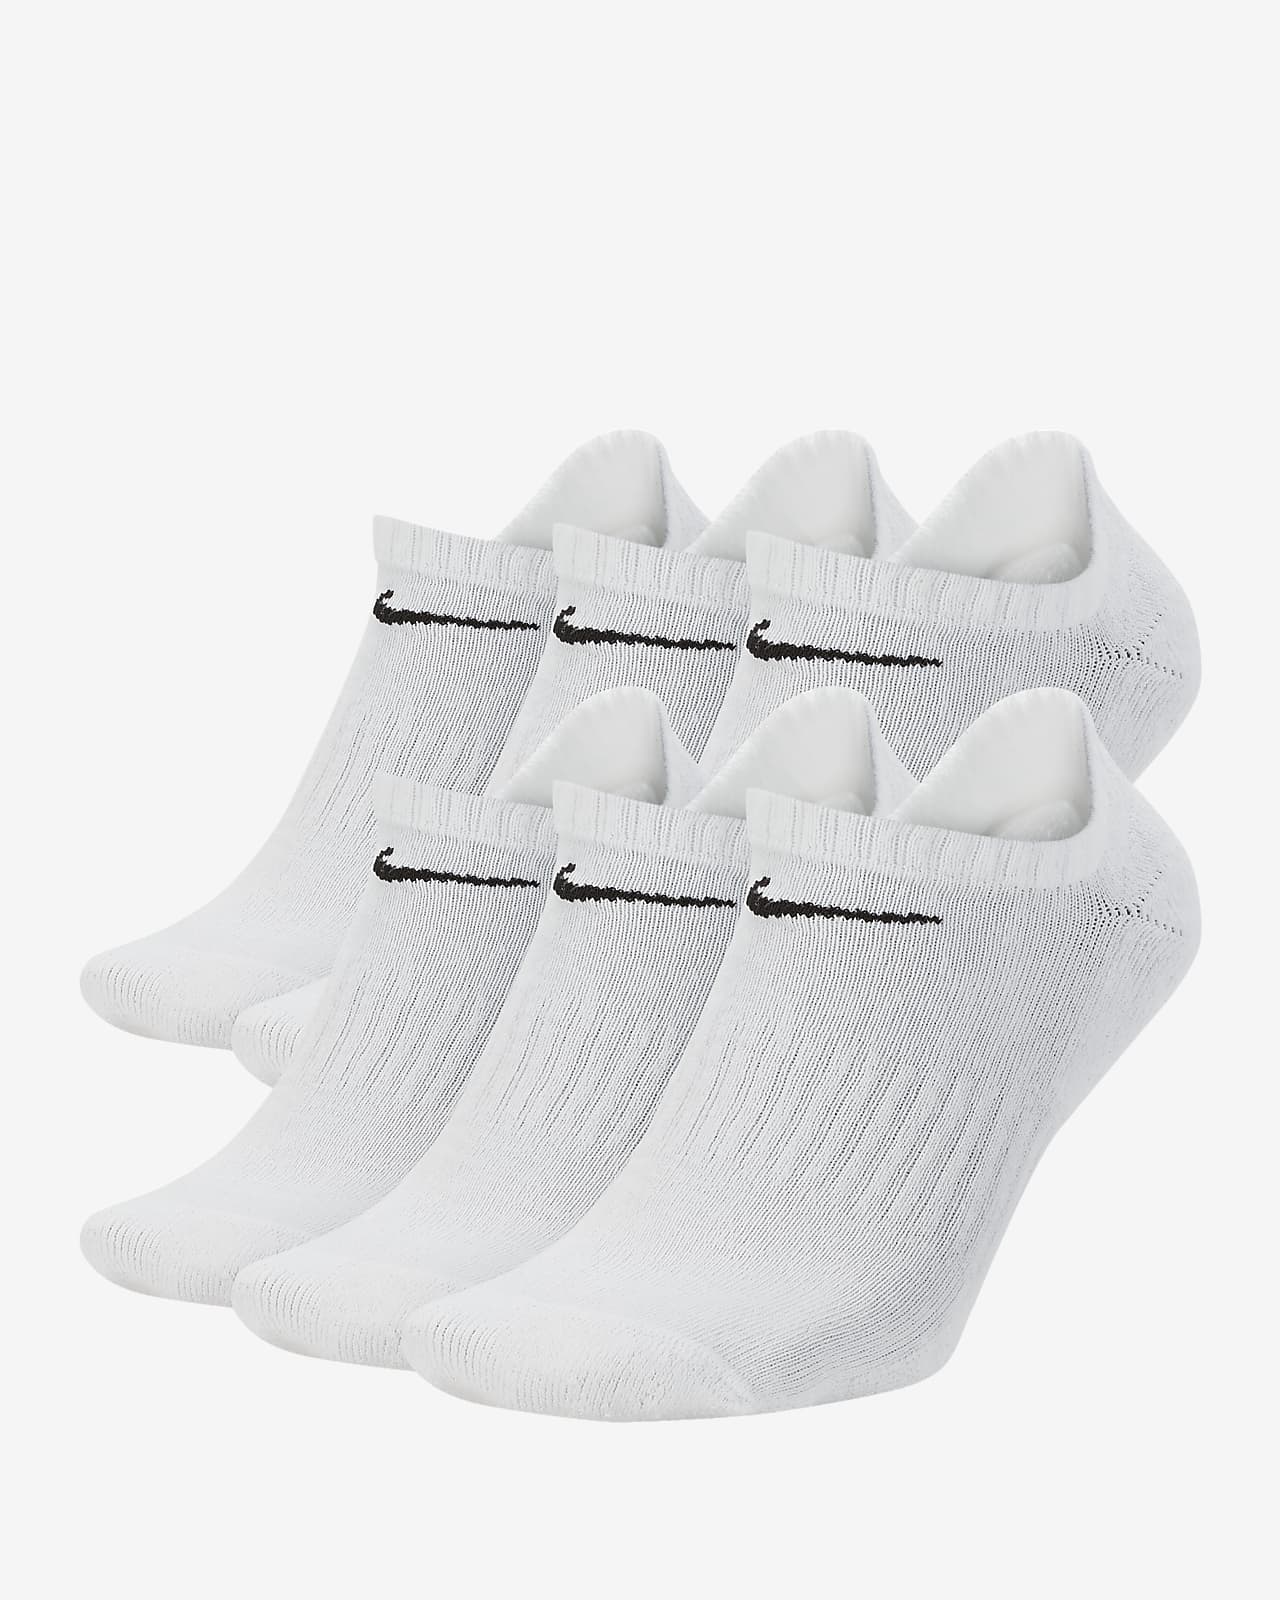 Χαμηλές κάλτσες προπόνησης Nike Everyday Cushioned (6 ζευγάρια)